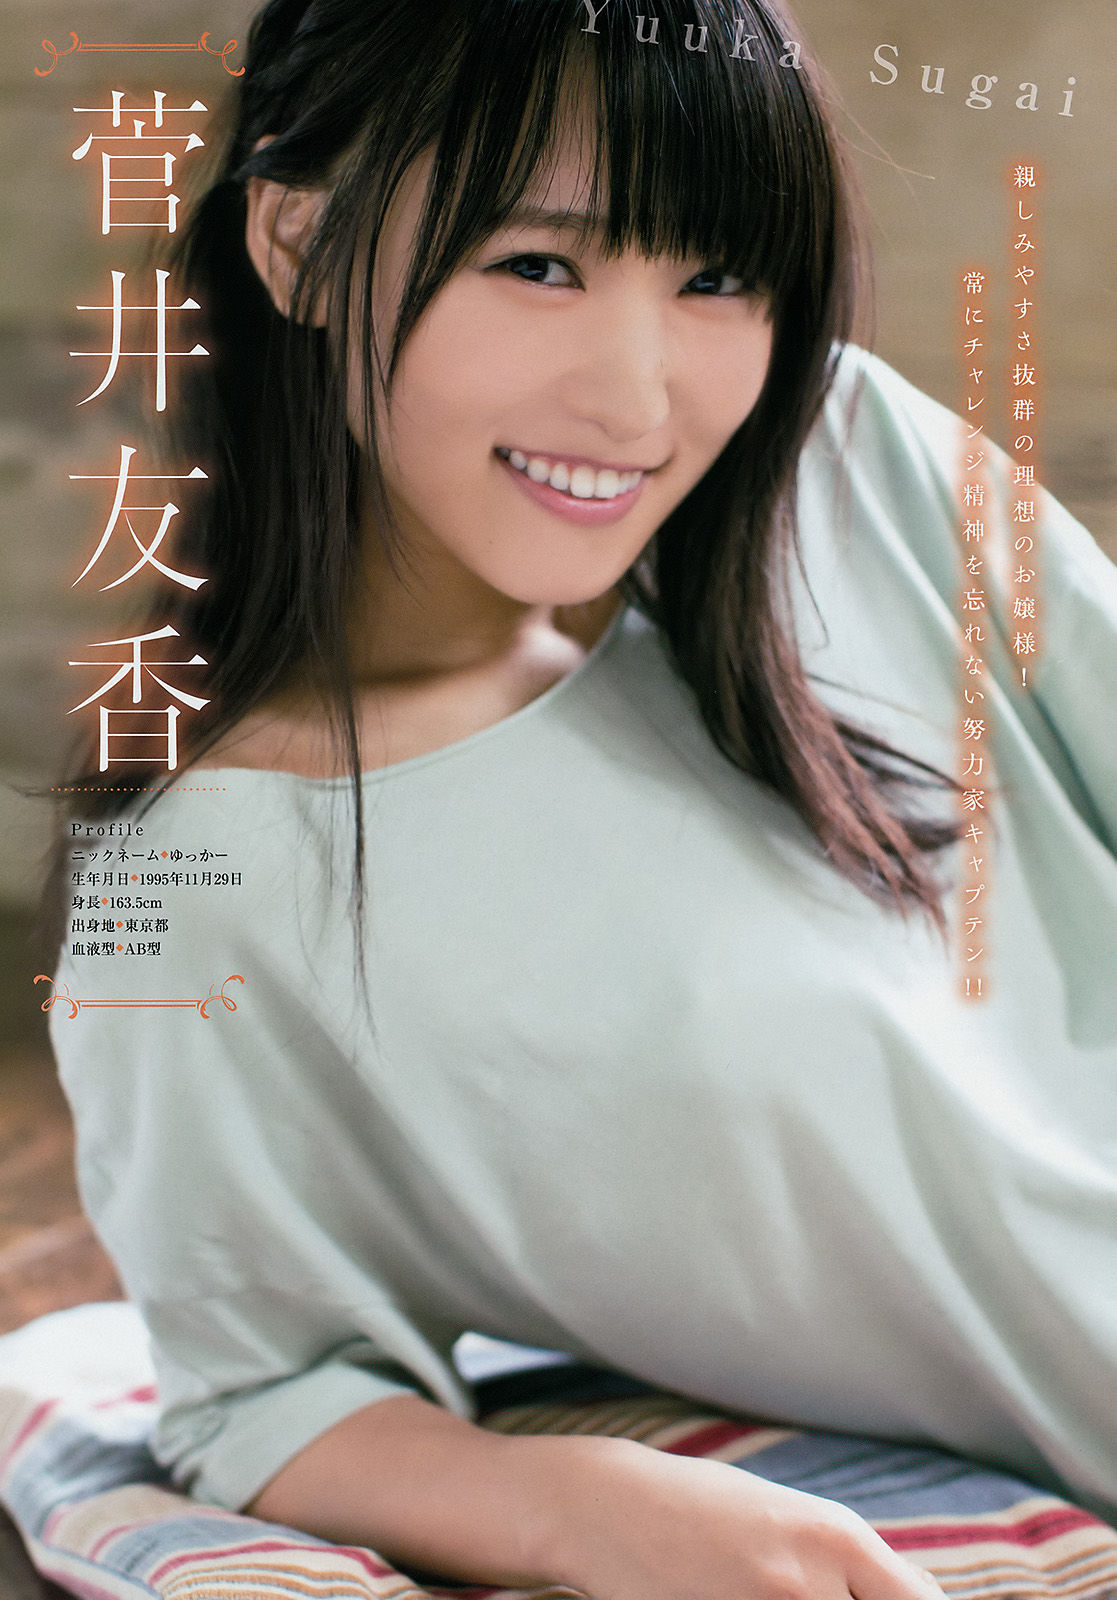 [Young Magazine]姐妹花:菅井友香高品质壁纸图片珍藏版(11P)